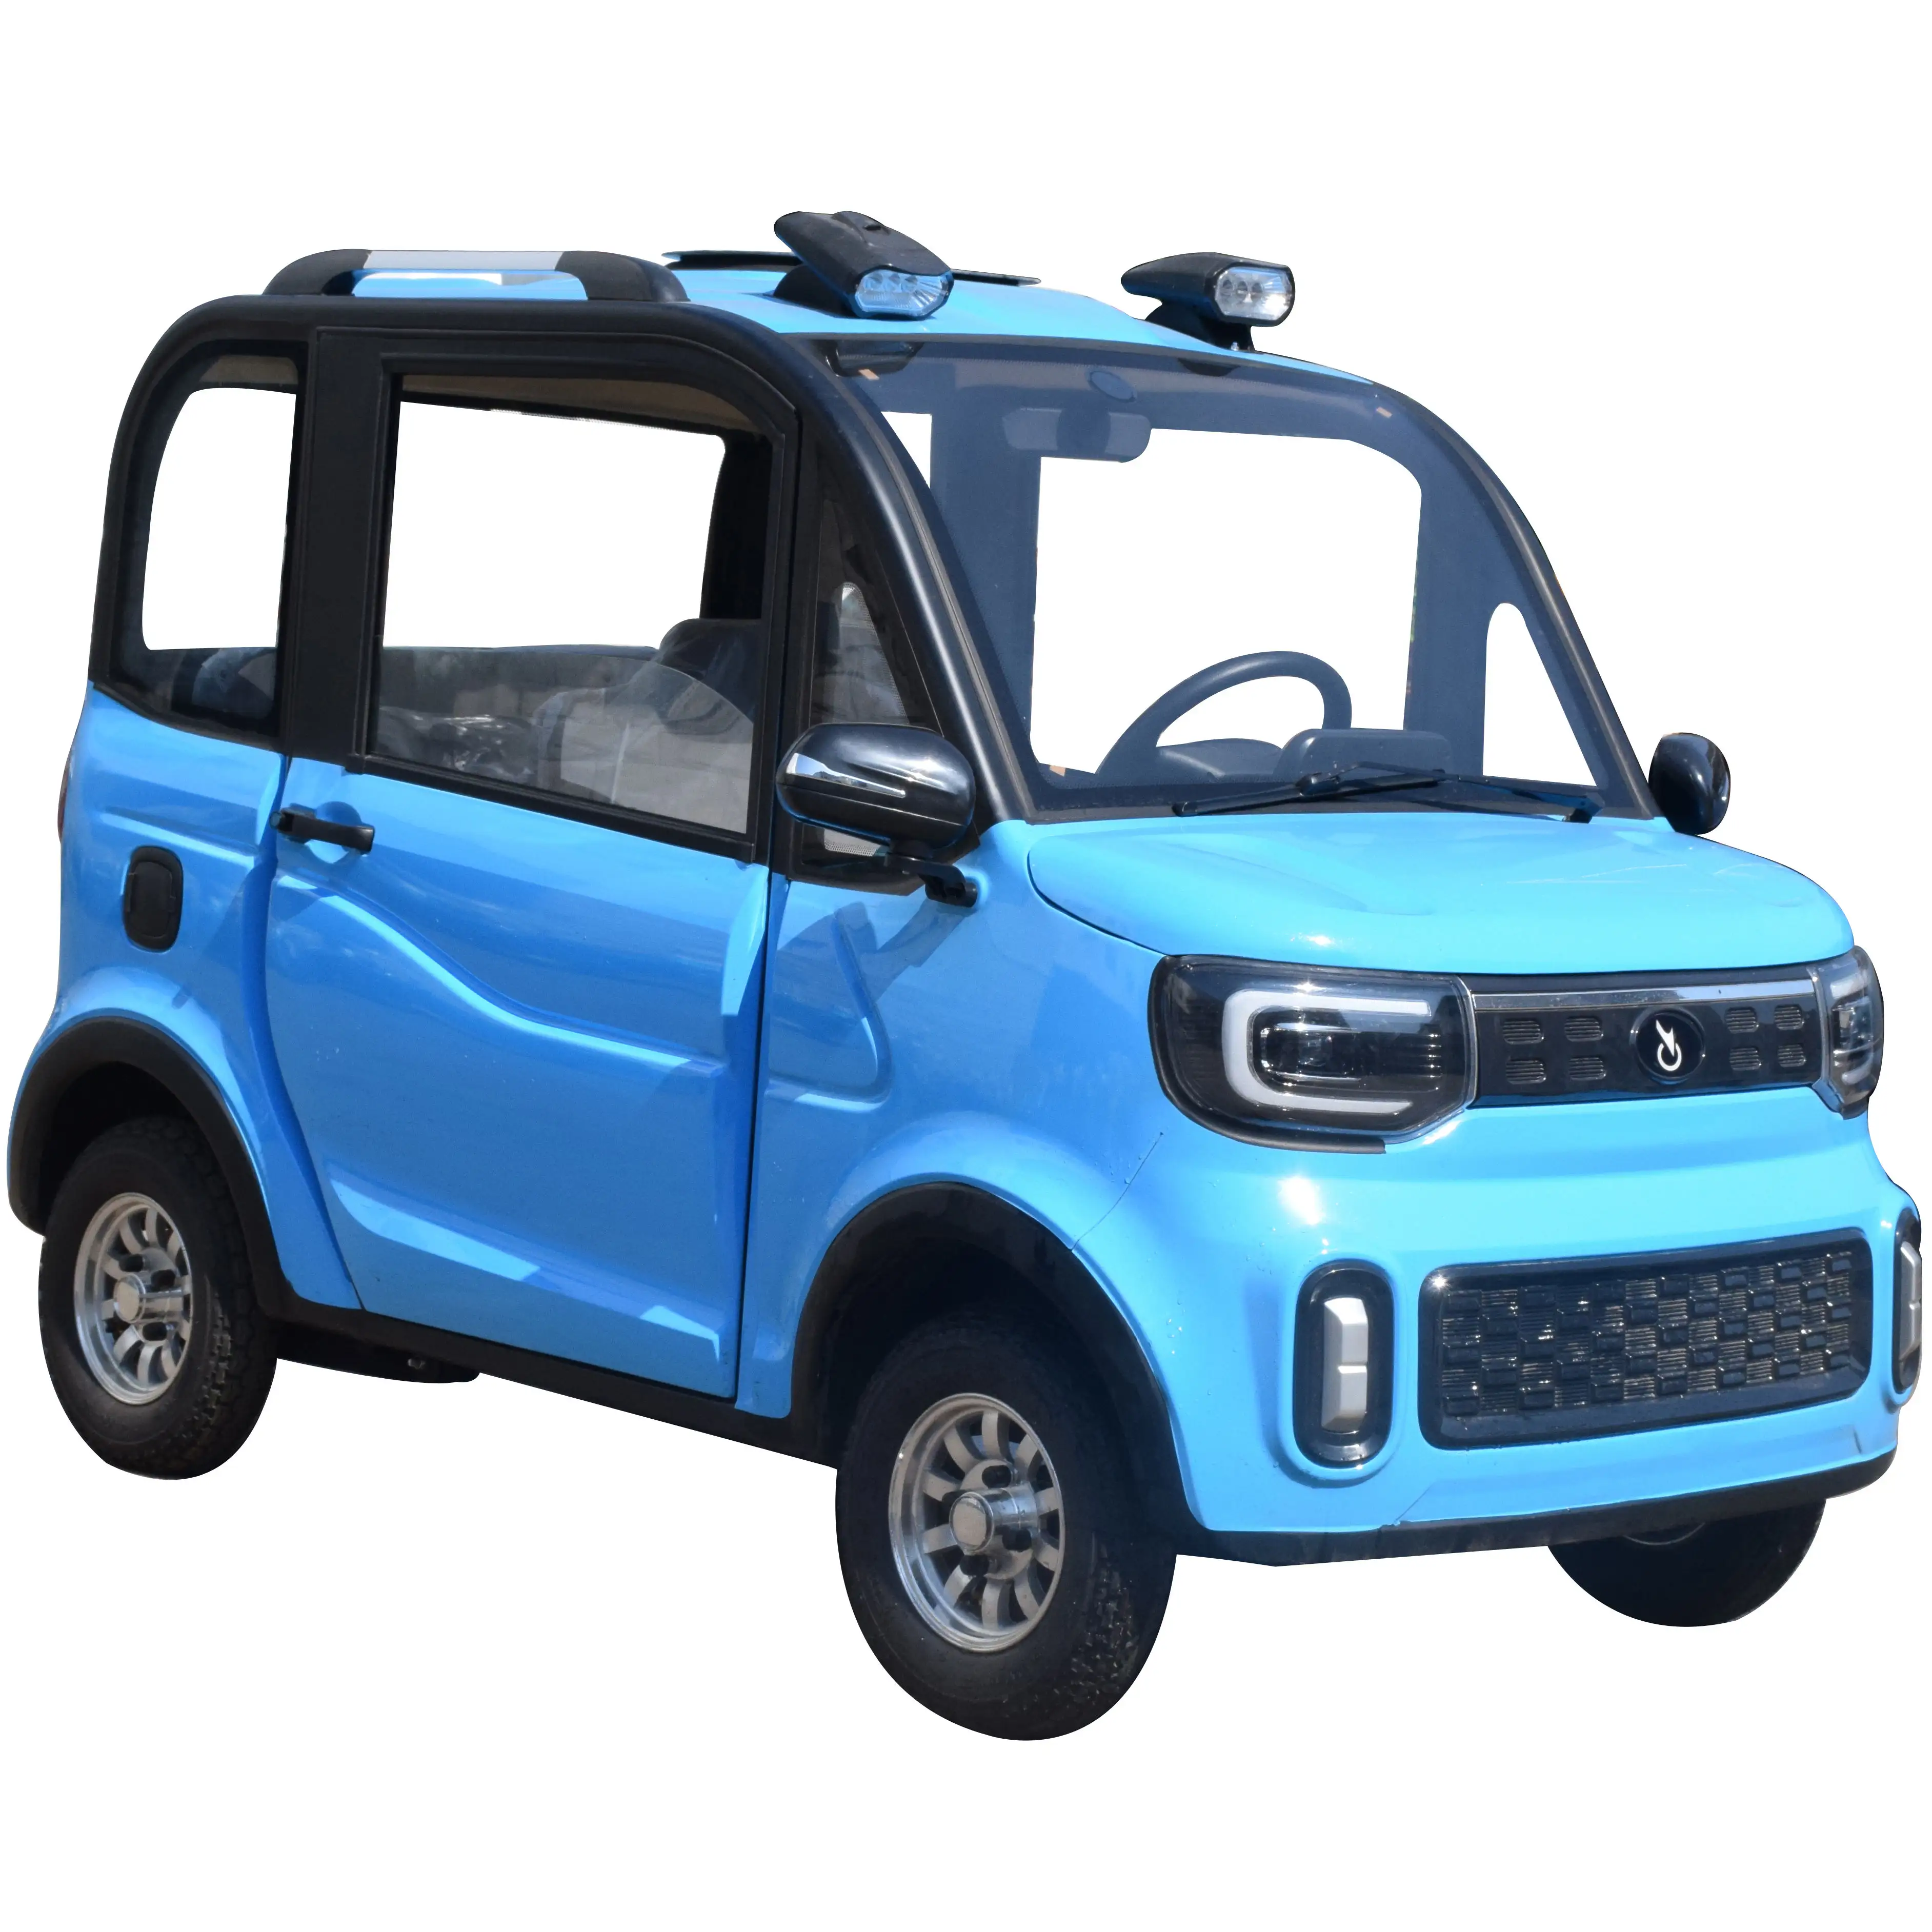 Электромобиль Chang, 3 сиденья, сделано в Китае, электрический автомобиль Li, четыре колеса, автомобиль для взрослых, мини-автомобиль, 60 км/ч, депозит